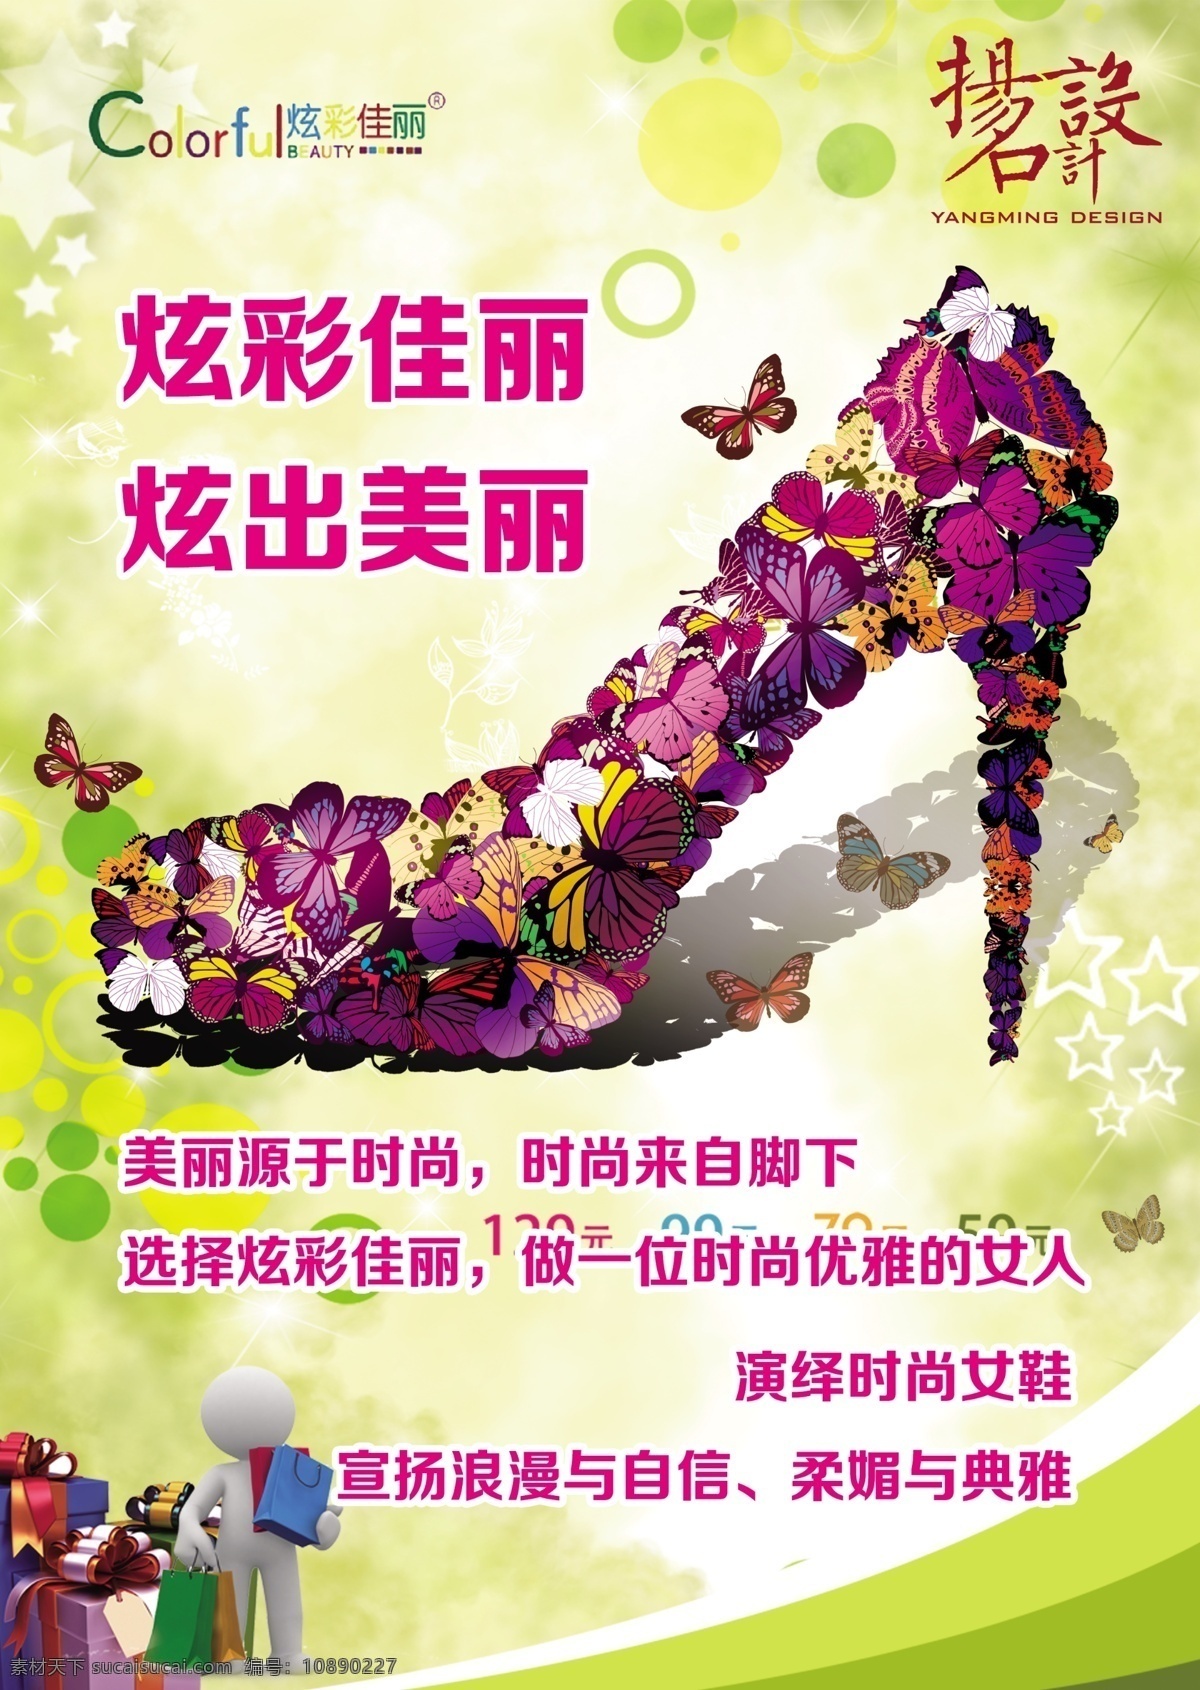 炫彩 佳丽 女鞋 广告 女鞋广告 商场广告 炫彩佳丽 广告宣传 蝴蝶鞋子 时尚模板 广告吊旗 广告设计模板 psd素材 分层素材 红色